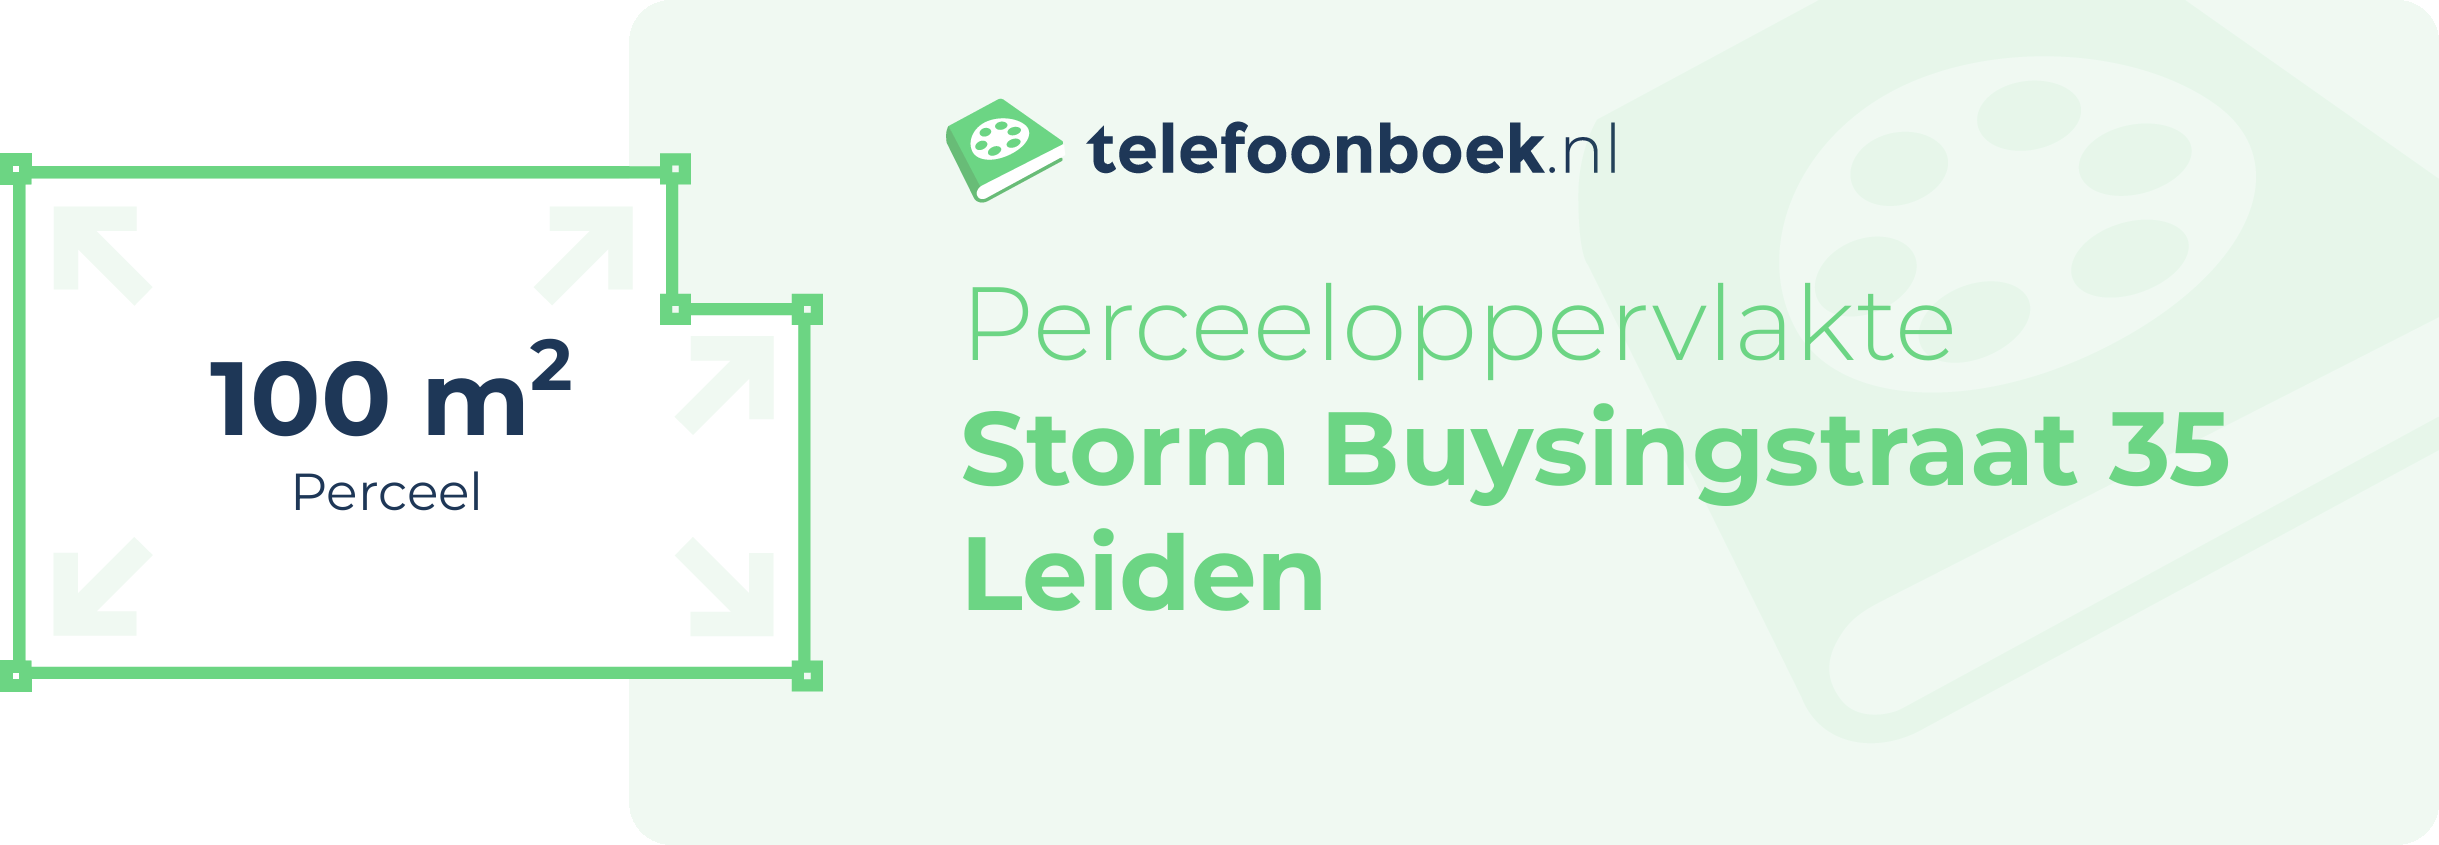 Perceeloppervlakte Storm Buysingstraat 35 Leiden